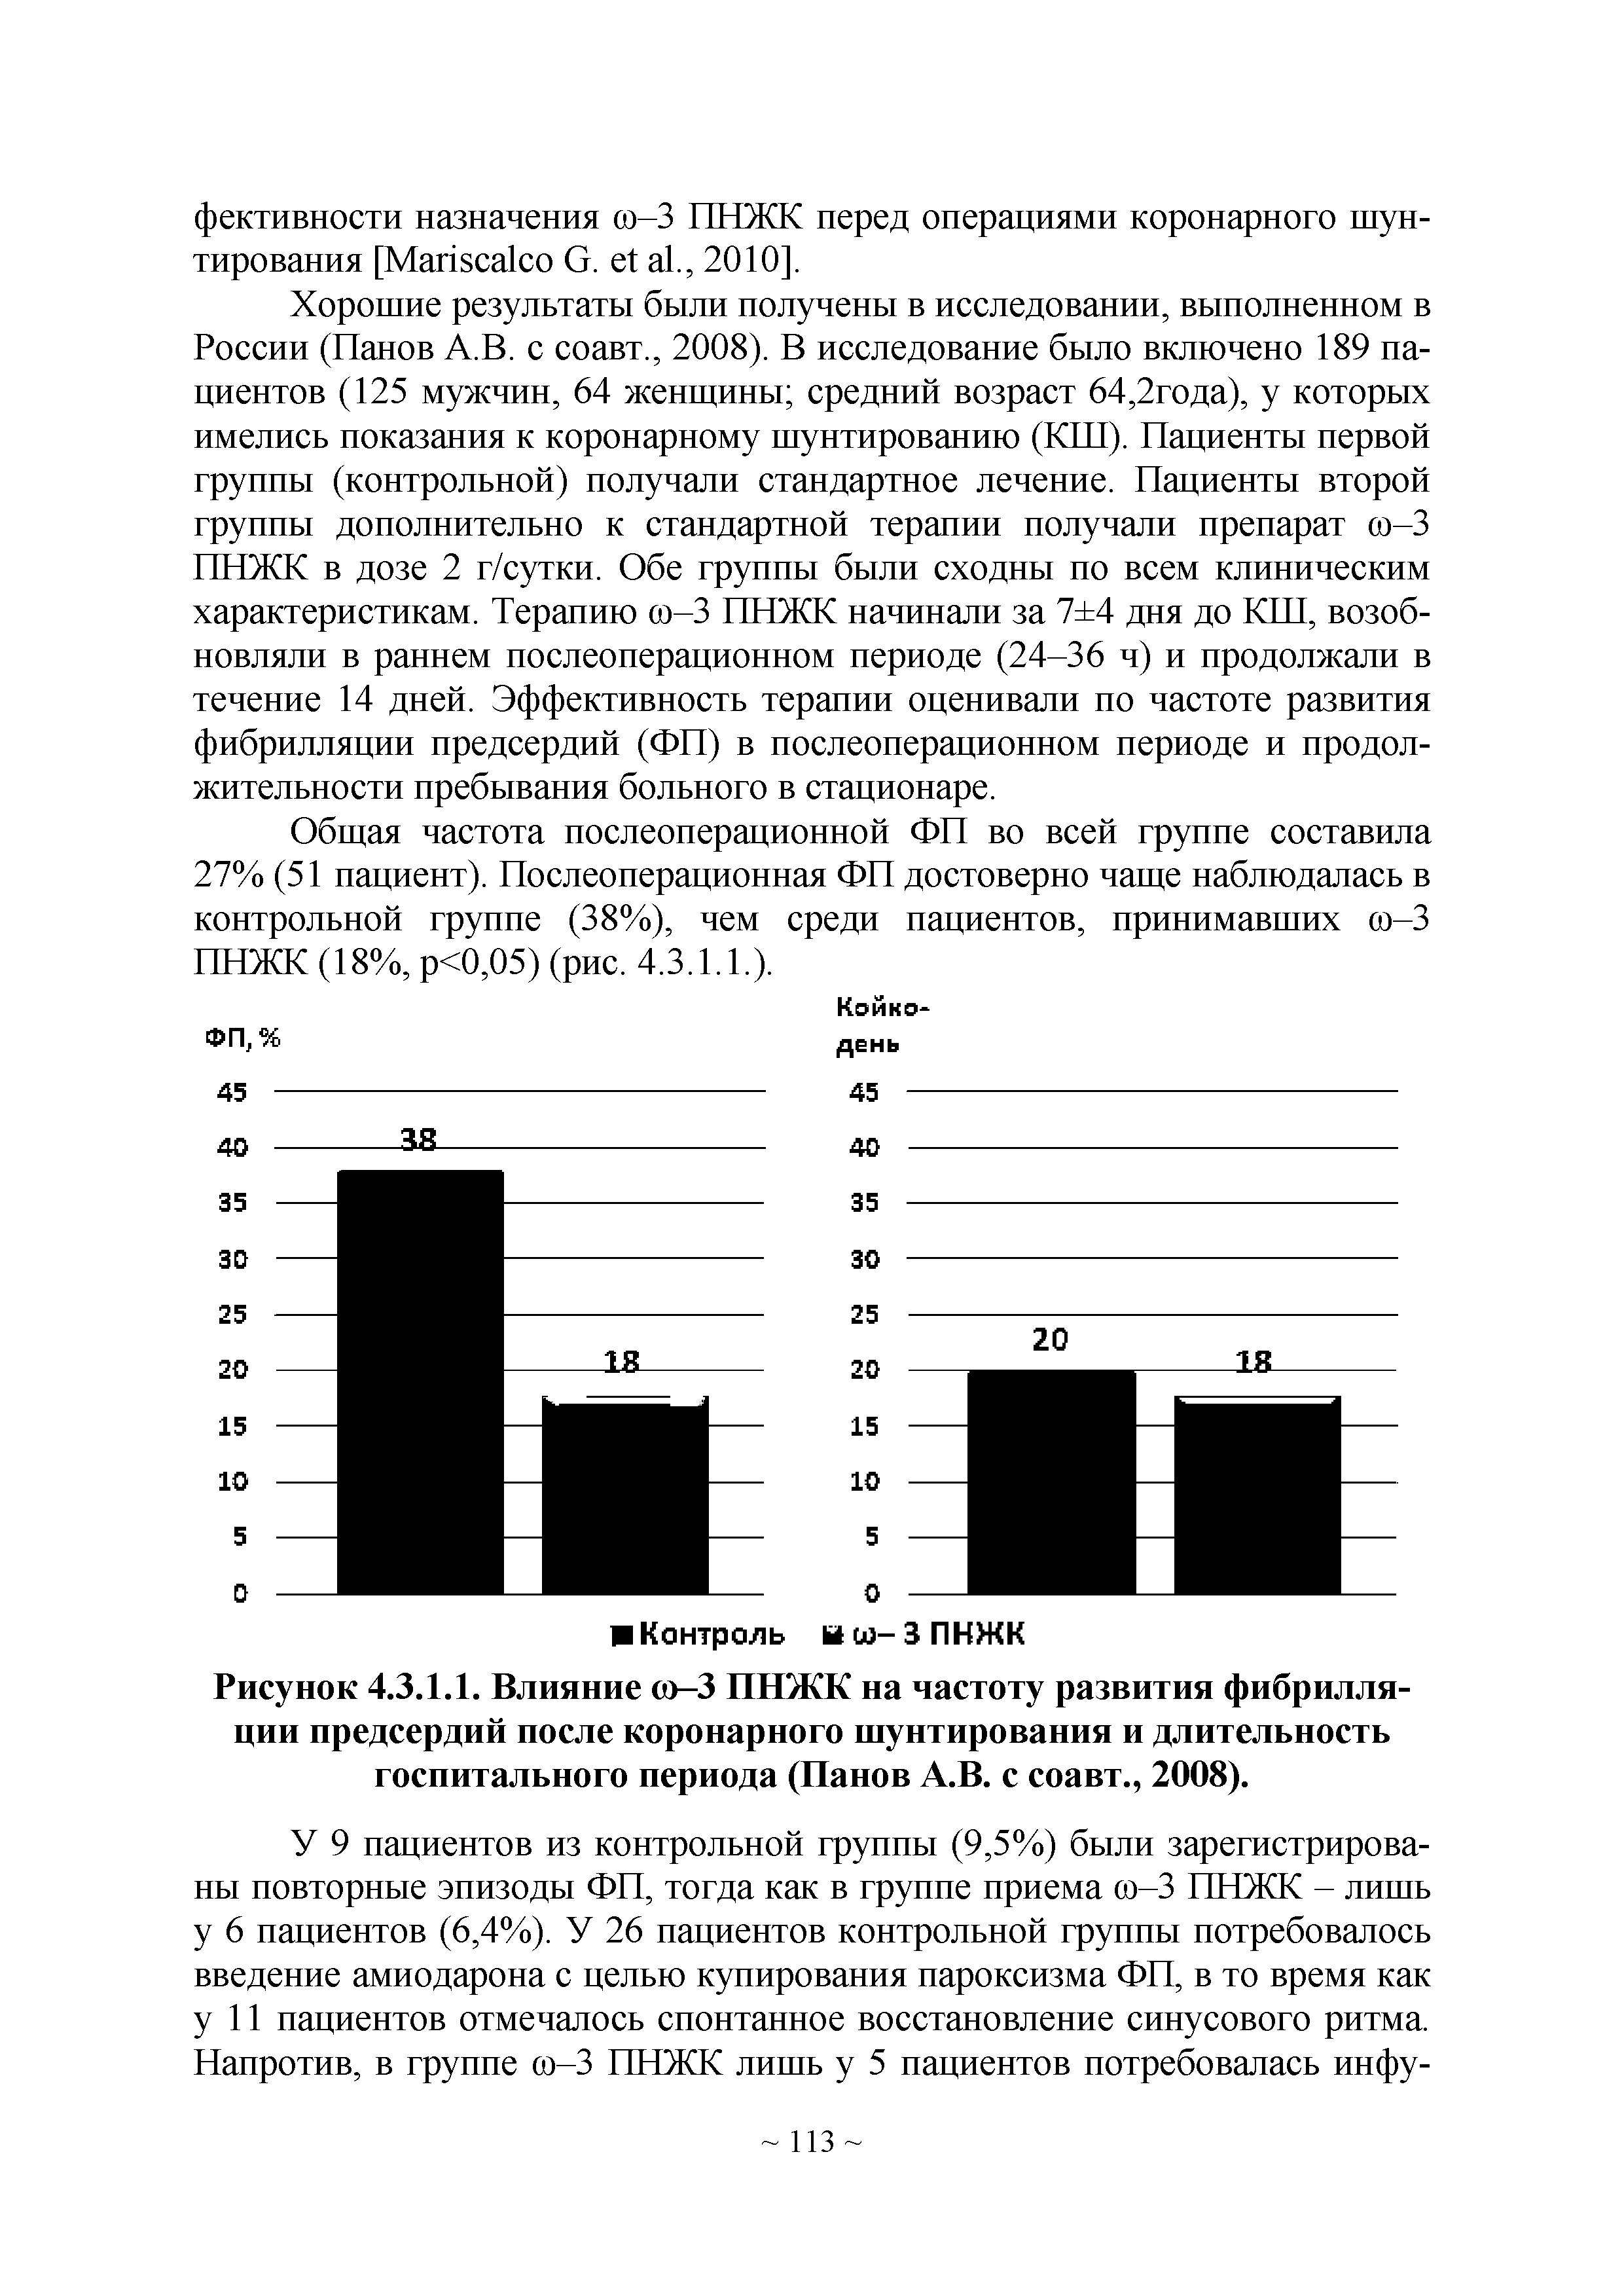 Рисунок 4.3.1.1. Влияние ю-3 ПНЖК на частоту развития фибрилляции предсердий после коронарного шунтирования и длительность госпитального периода (Панов А.В. с соавт., 2008).